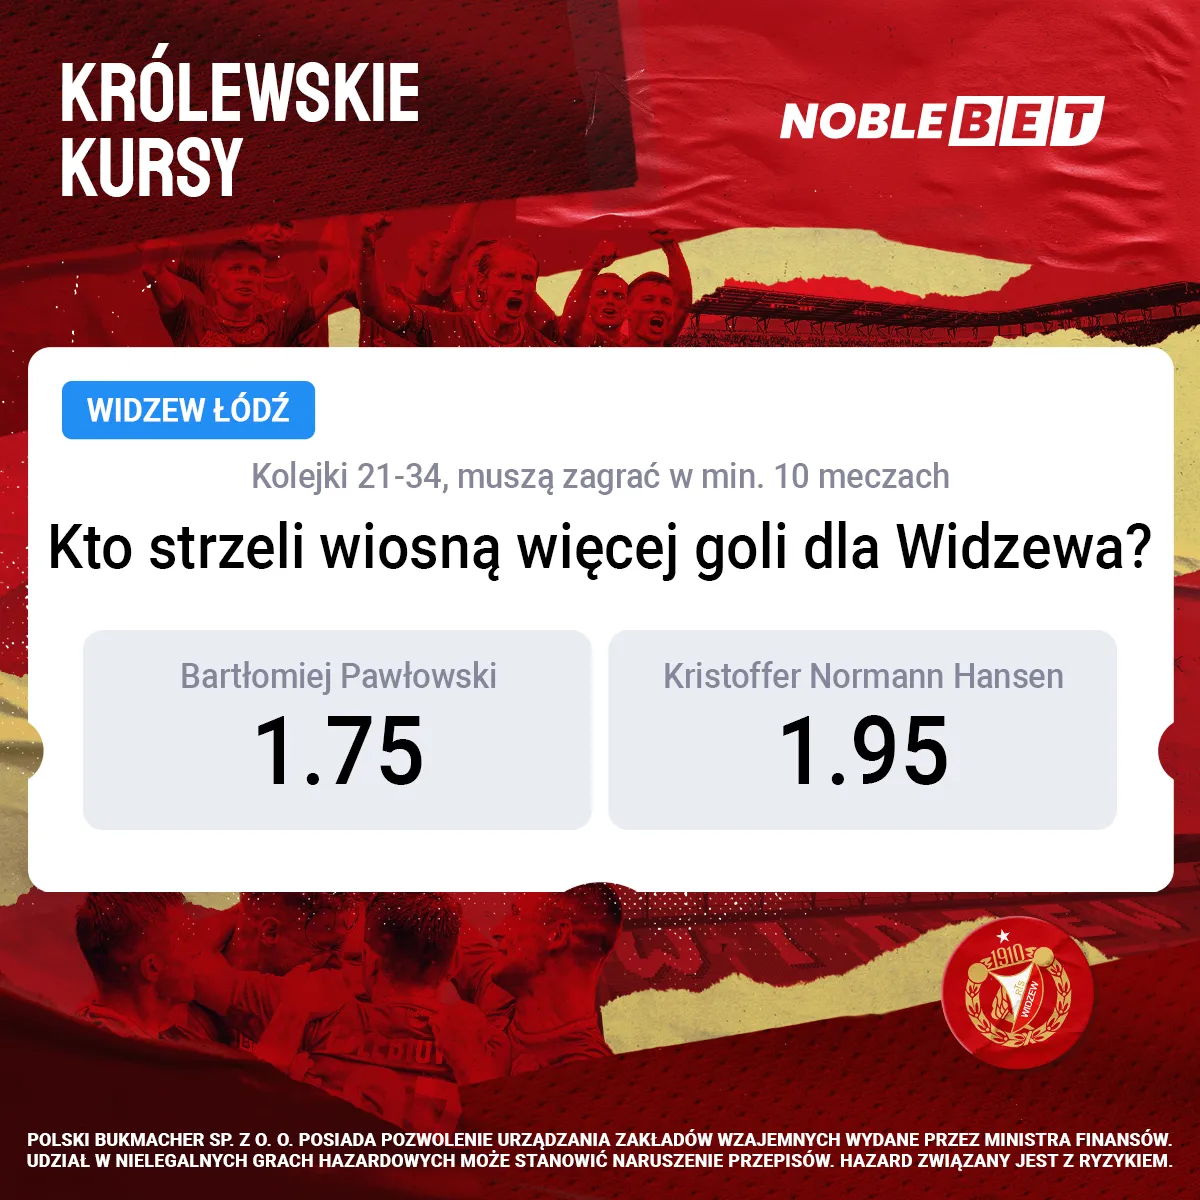 Najlepsze kursy na piłkę nożną na www.noblebet.pl